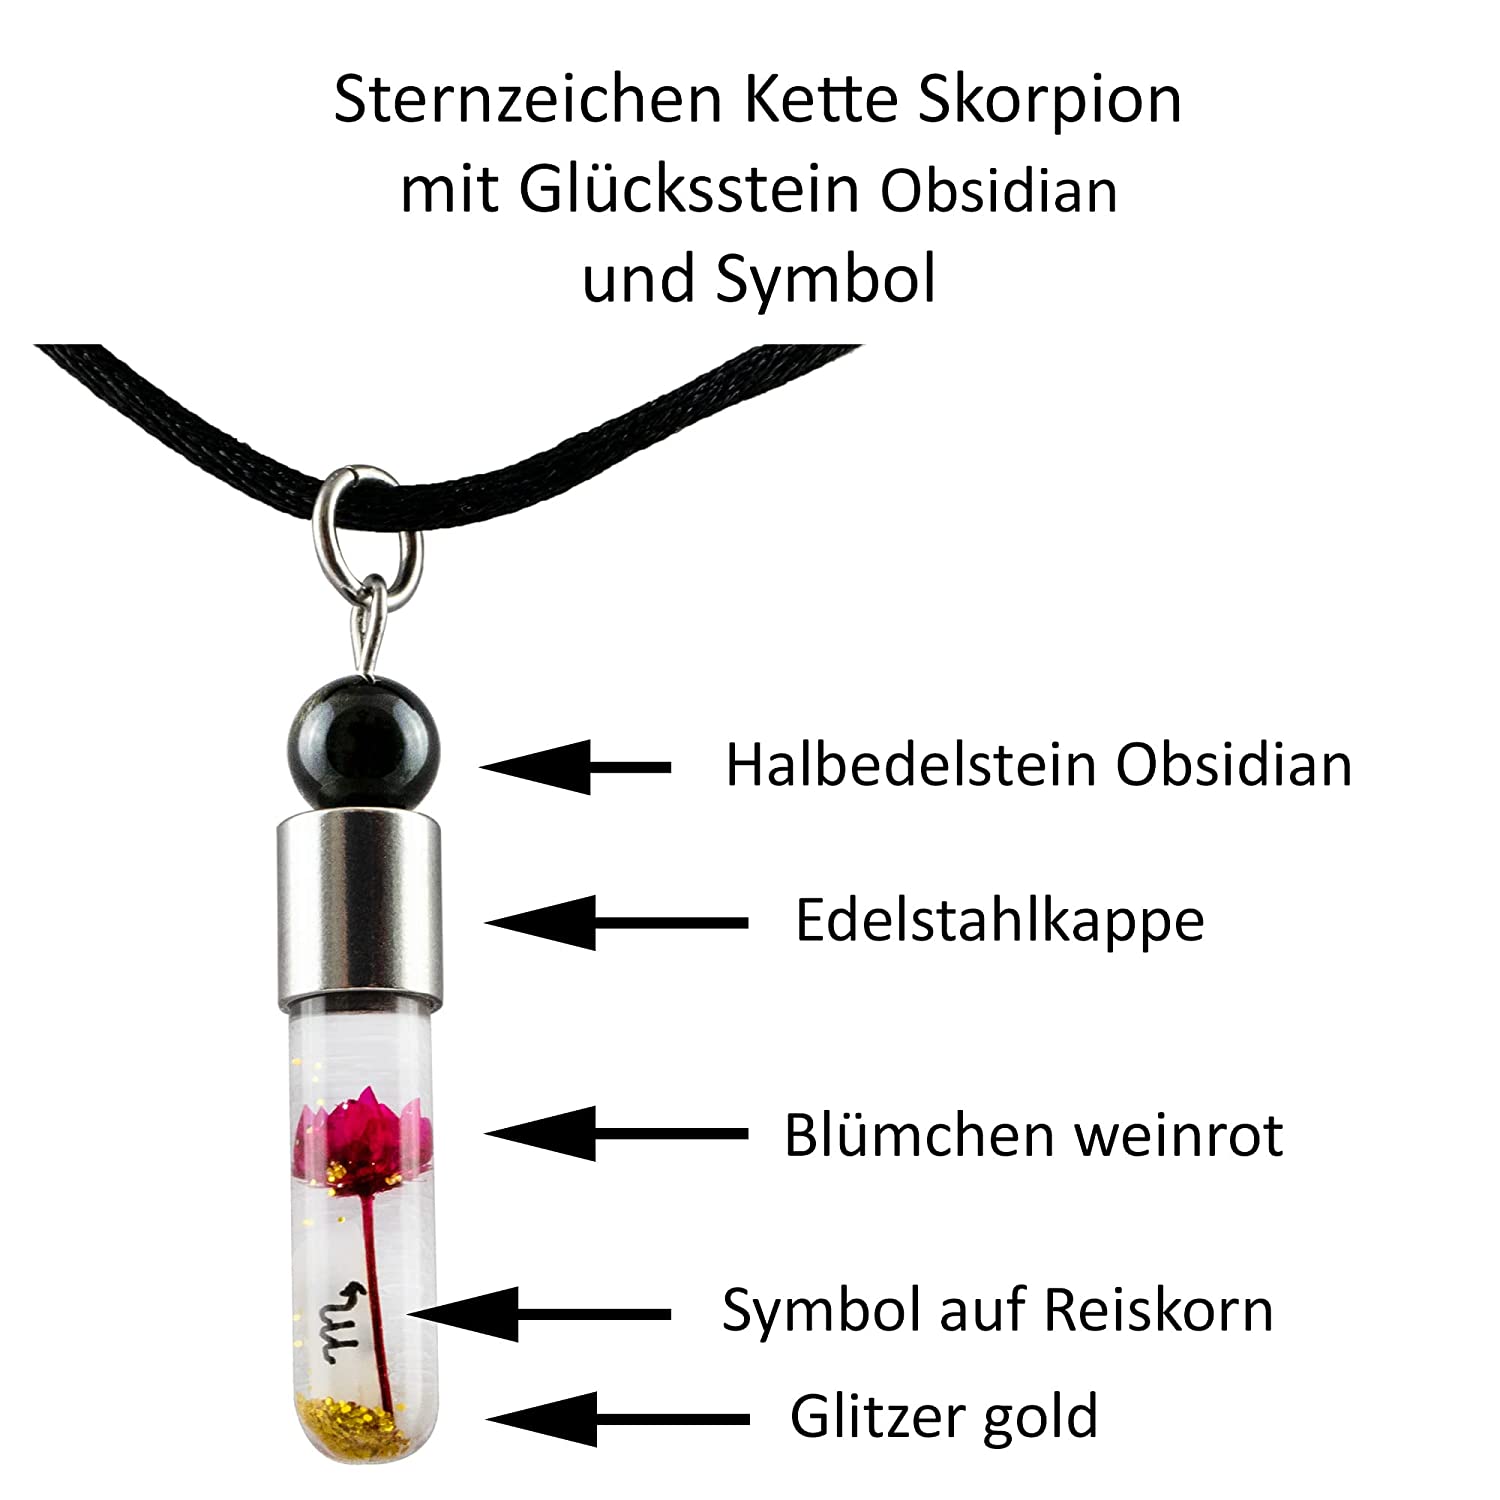 Sternzeichen Skorpion, 24. Oktober - 22. November, Halskette mit Glückstein Obsidian und Sternzeichensymbol